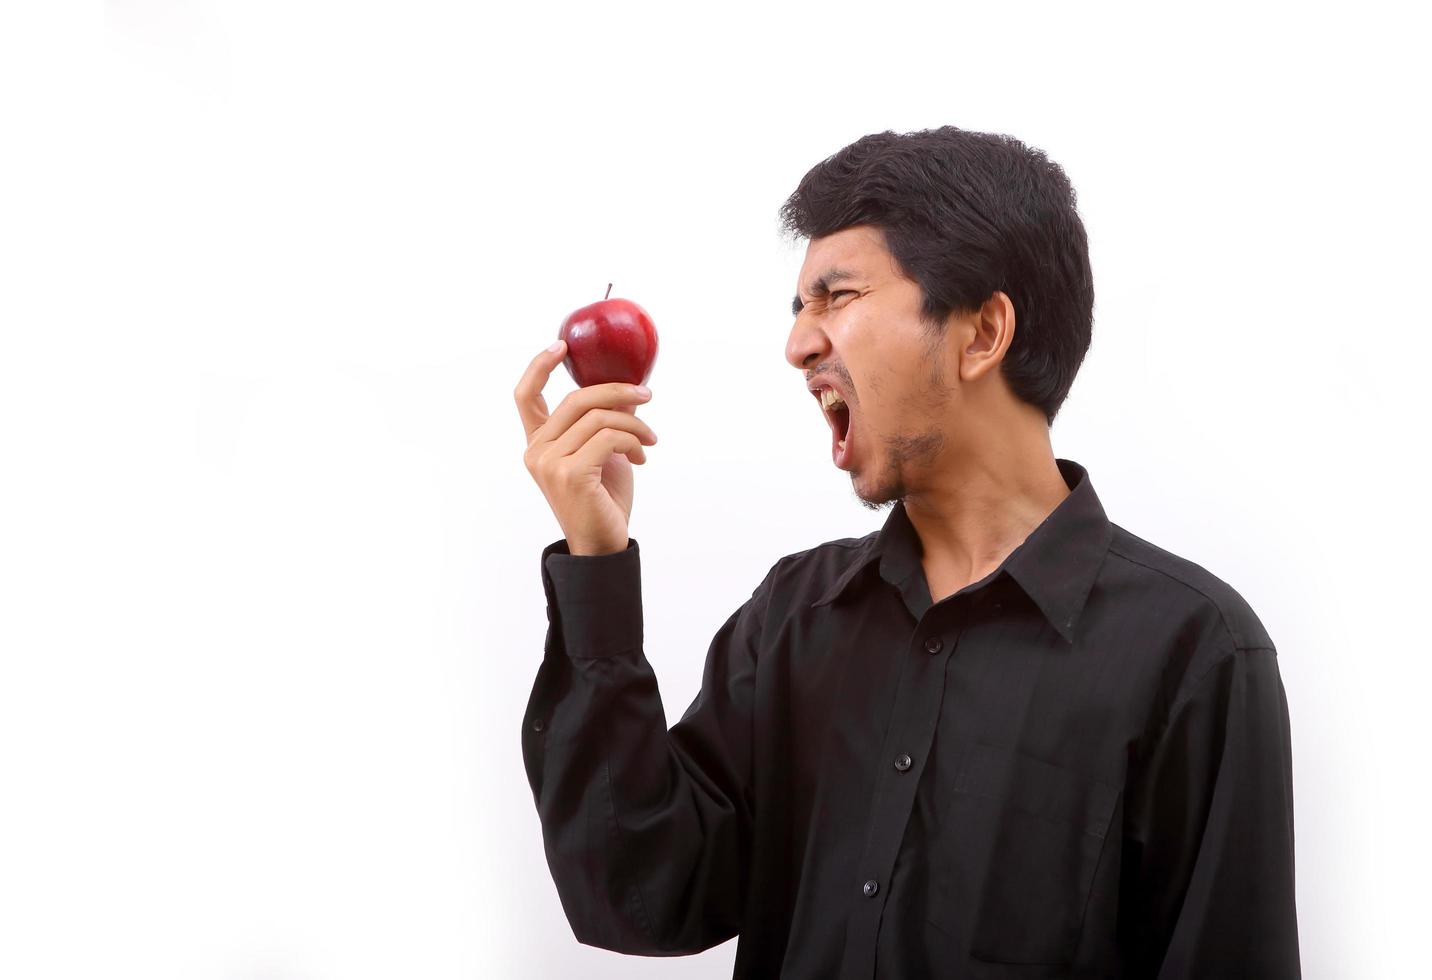 jovem saudável comendo uma maçã vermelha foto